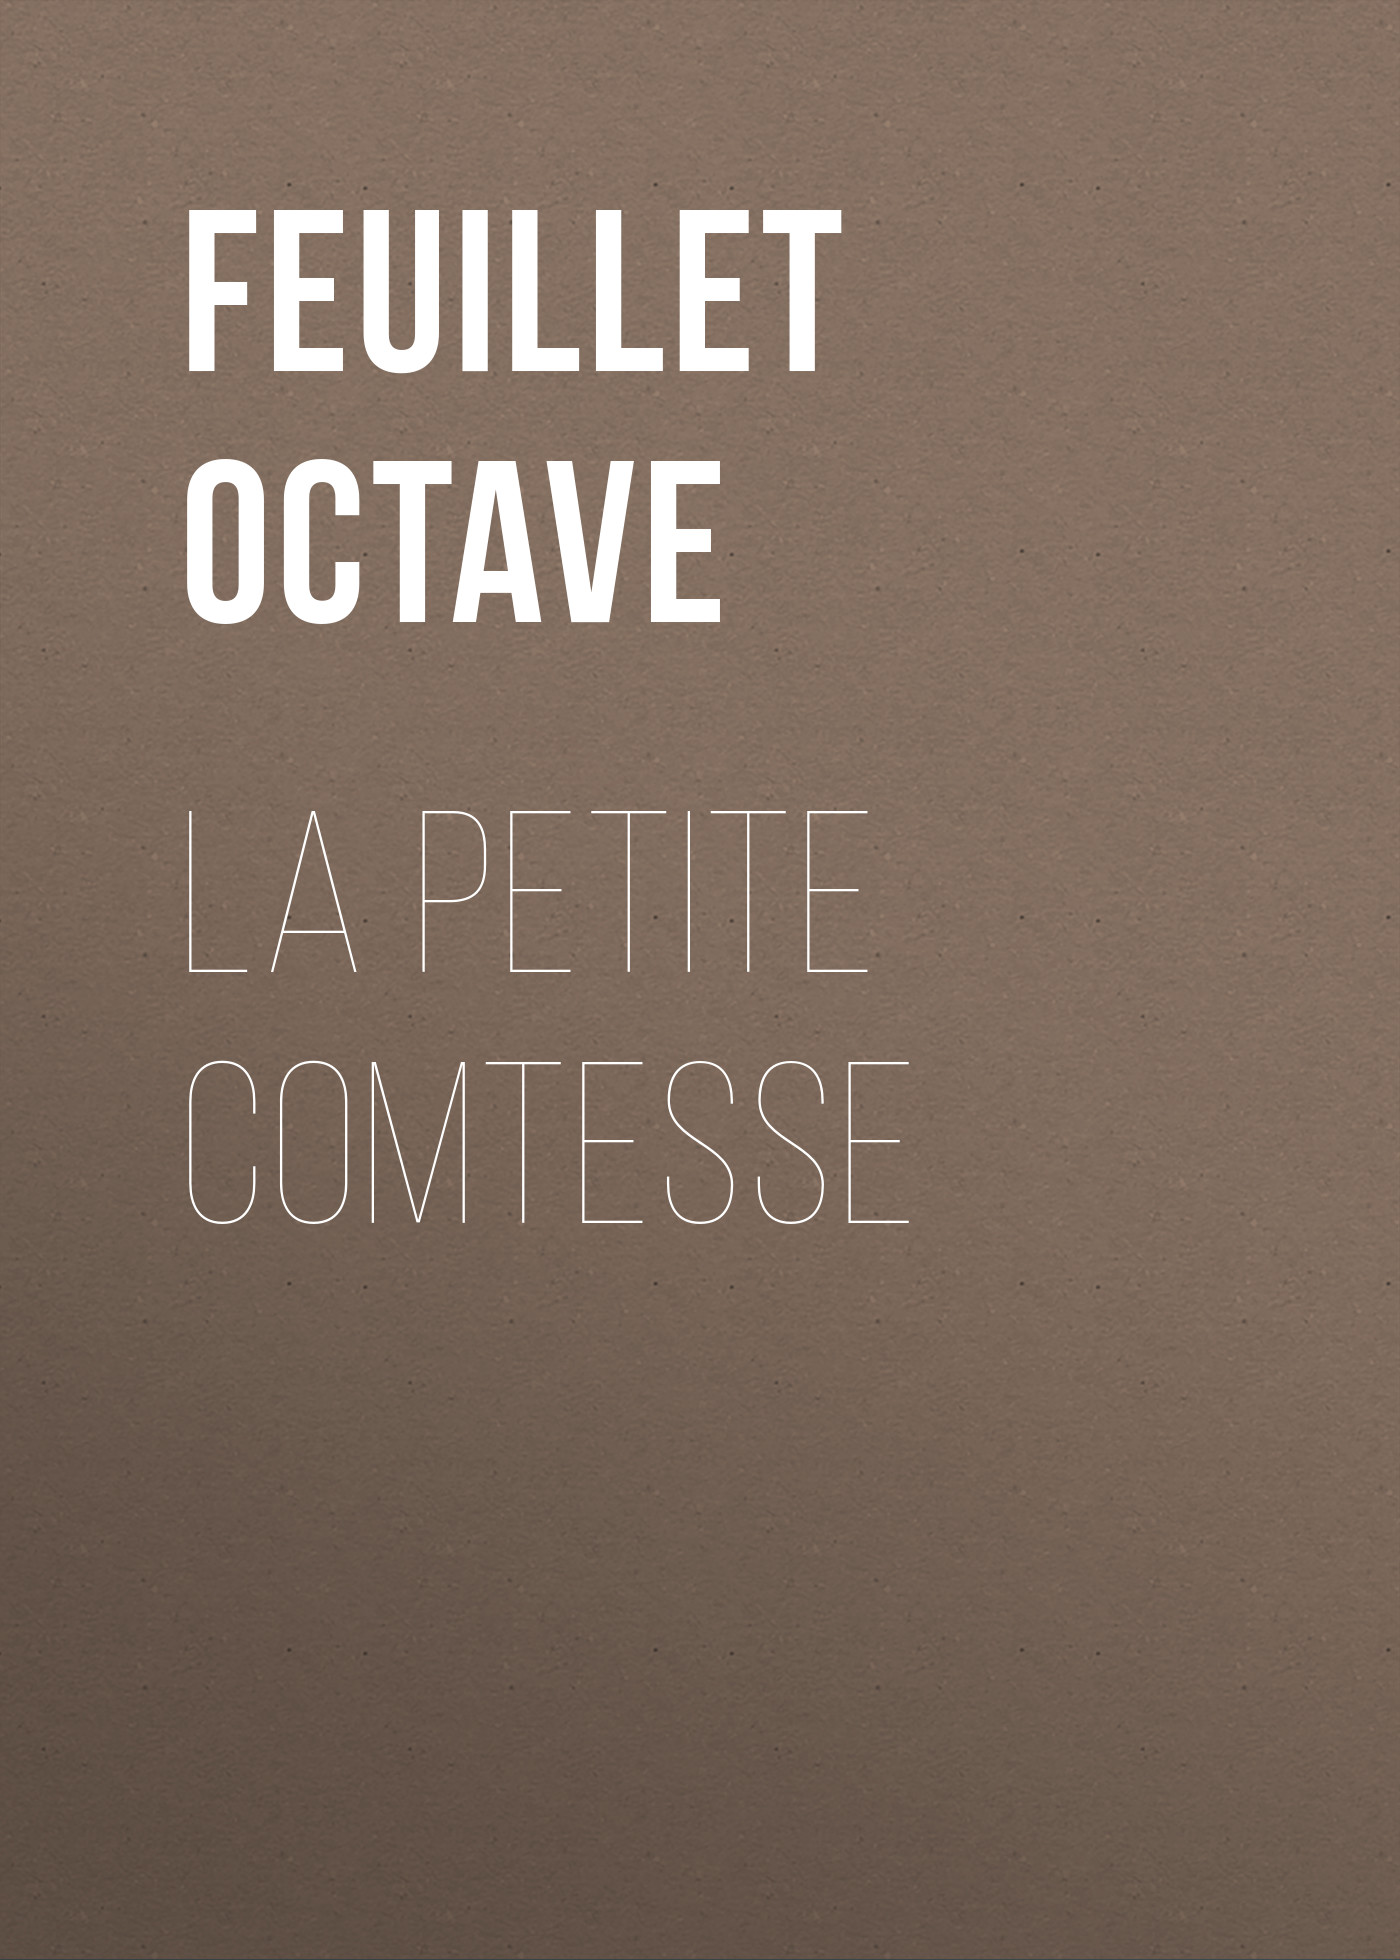 Книга La petite comtesse из серии , созданная Octave Feuillet, может относится к жанру Зарубежная старинная литература, Зарубежная классика, Иностранные языки. Стоимость электронной книги La petite comtesse с идентификатором 24727665 составляет 0 руб.